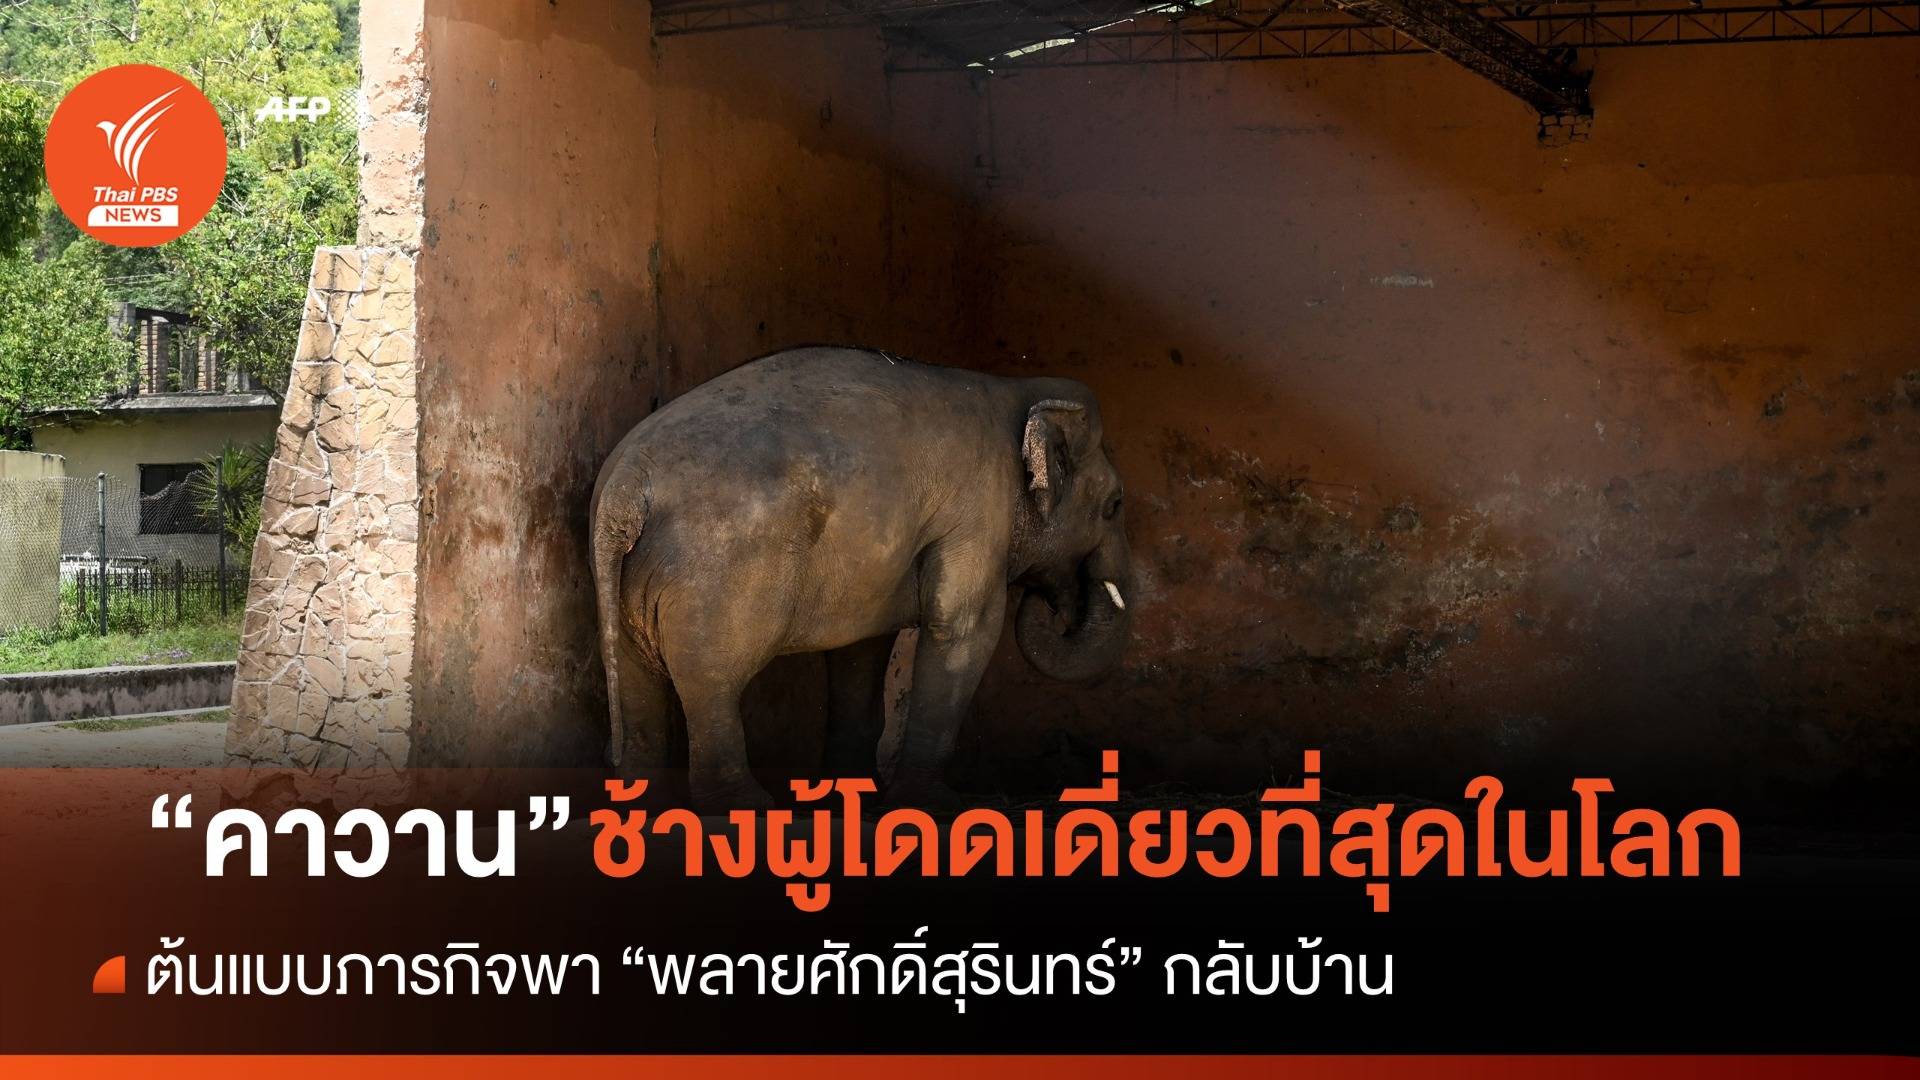 ย้อนรอยปฏิบัติการบินข้ามประเทศ "คาวาน ช้างผู้โดดเดี่ยวที่สุดในโลก"